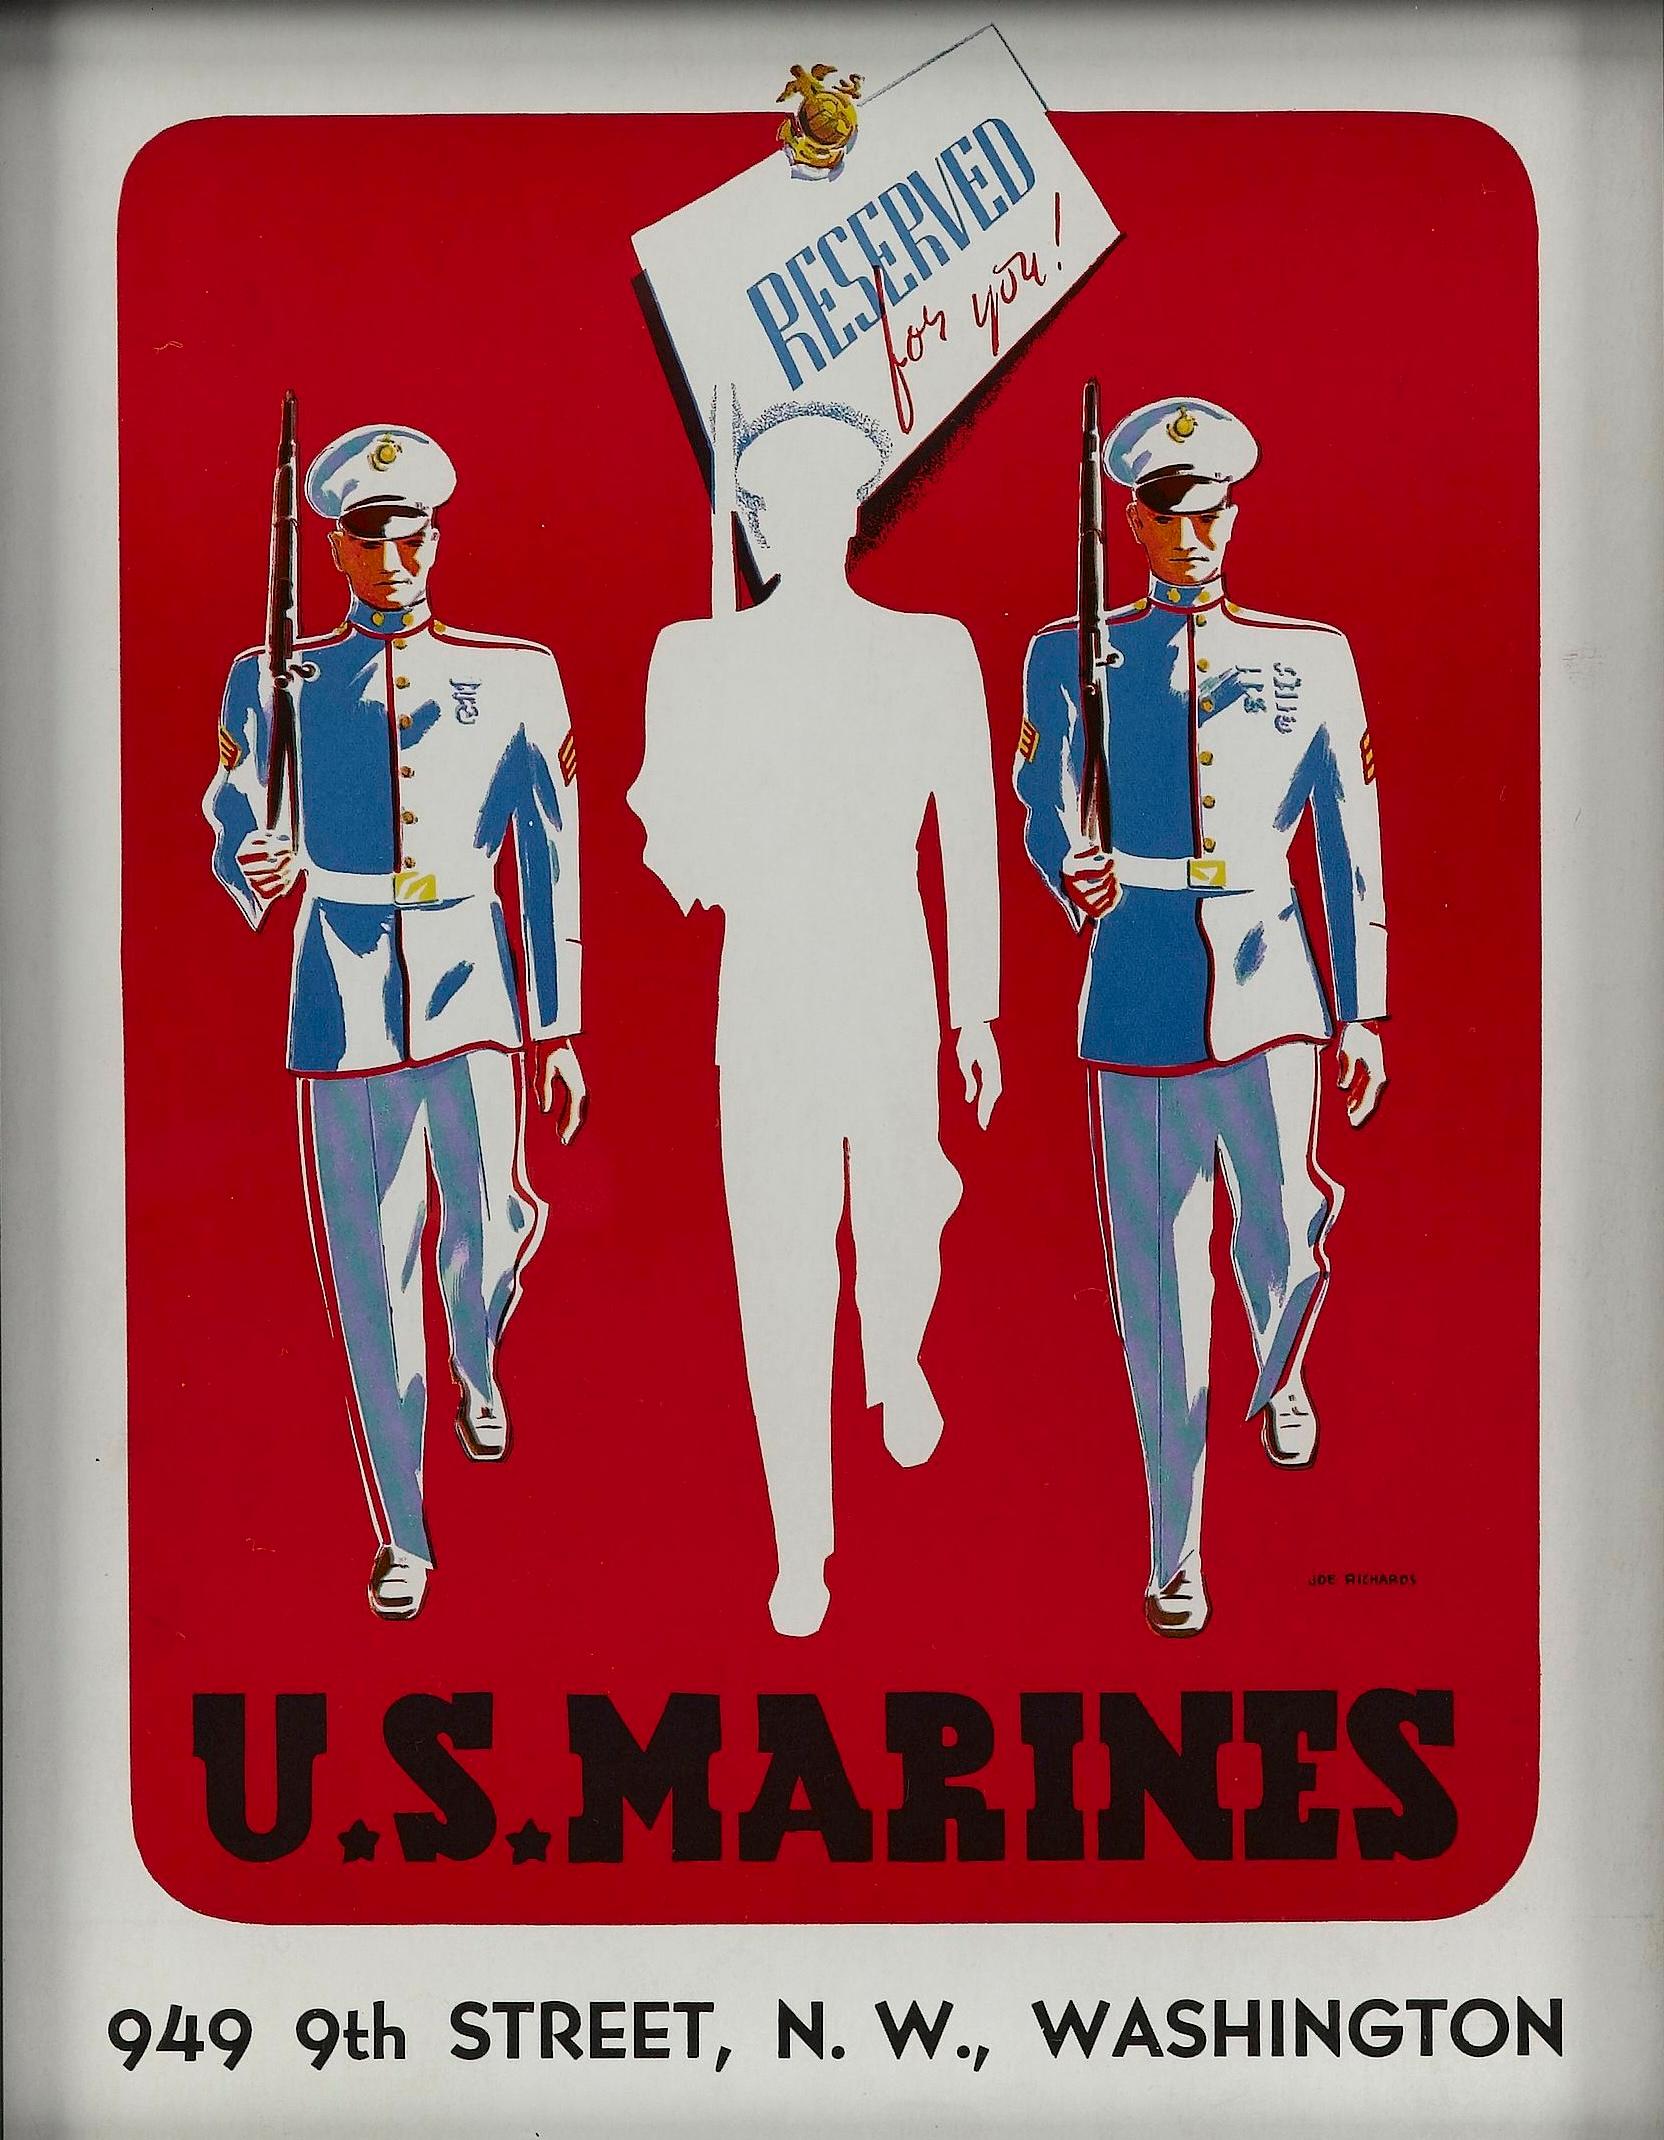 Il s'agit d'une affiche originale de recrutement des Marines de la Seconde Guerre mondiale, conçue par Joe Richards. L'affiche, une lithographie en couleur, a été publiée le 28 novembre 1941, moins de 10 jours avant l'attaque de Pearl